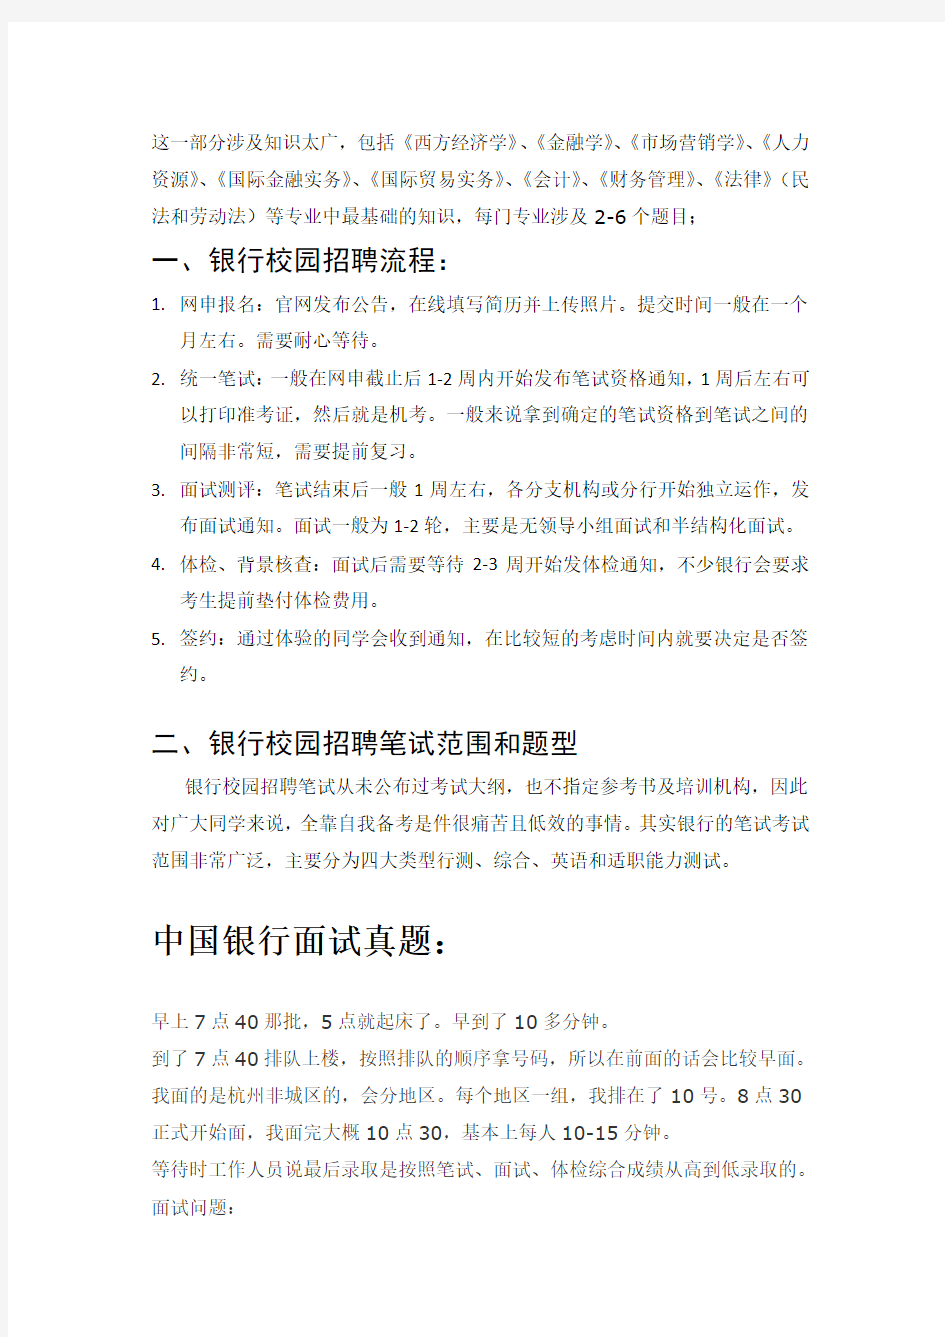 中国银行校园招聘考试笔试题型大纲教材历年考试真题题库讲义